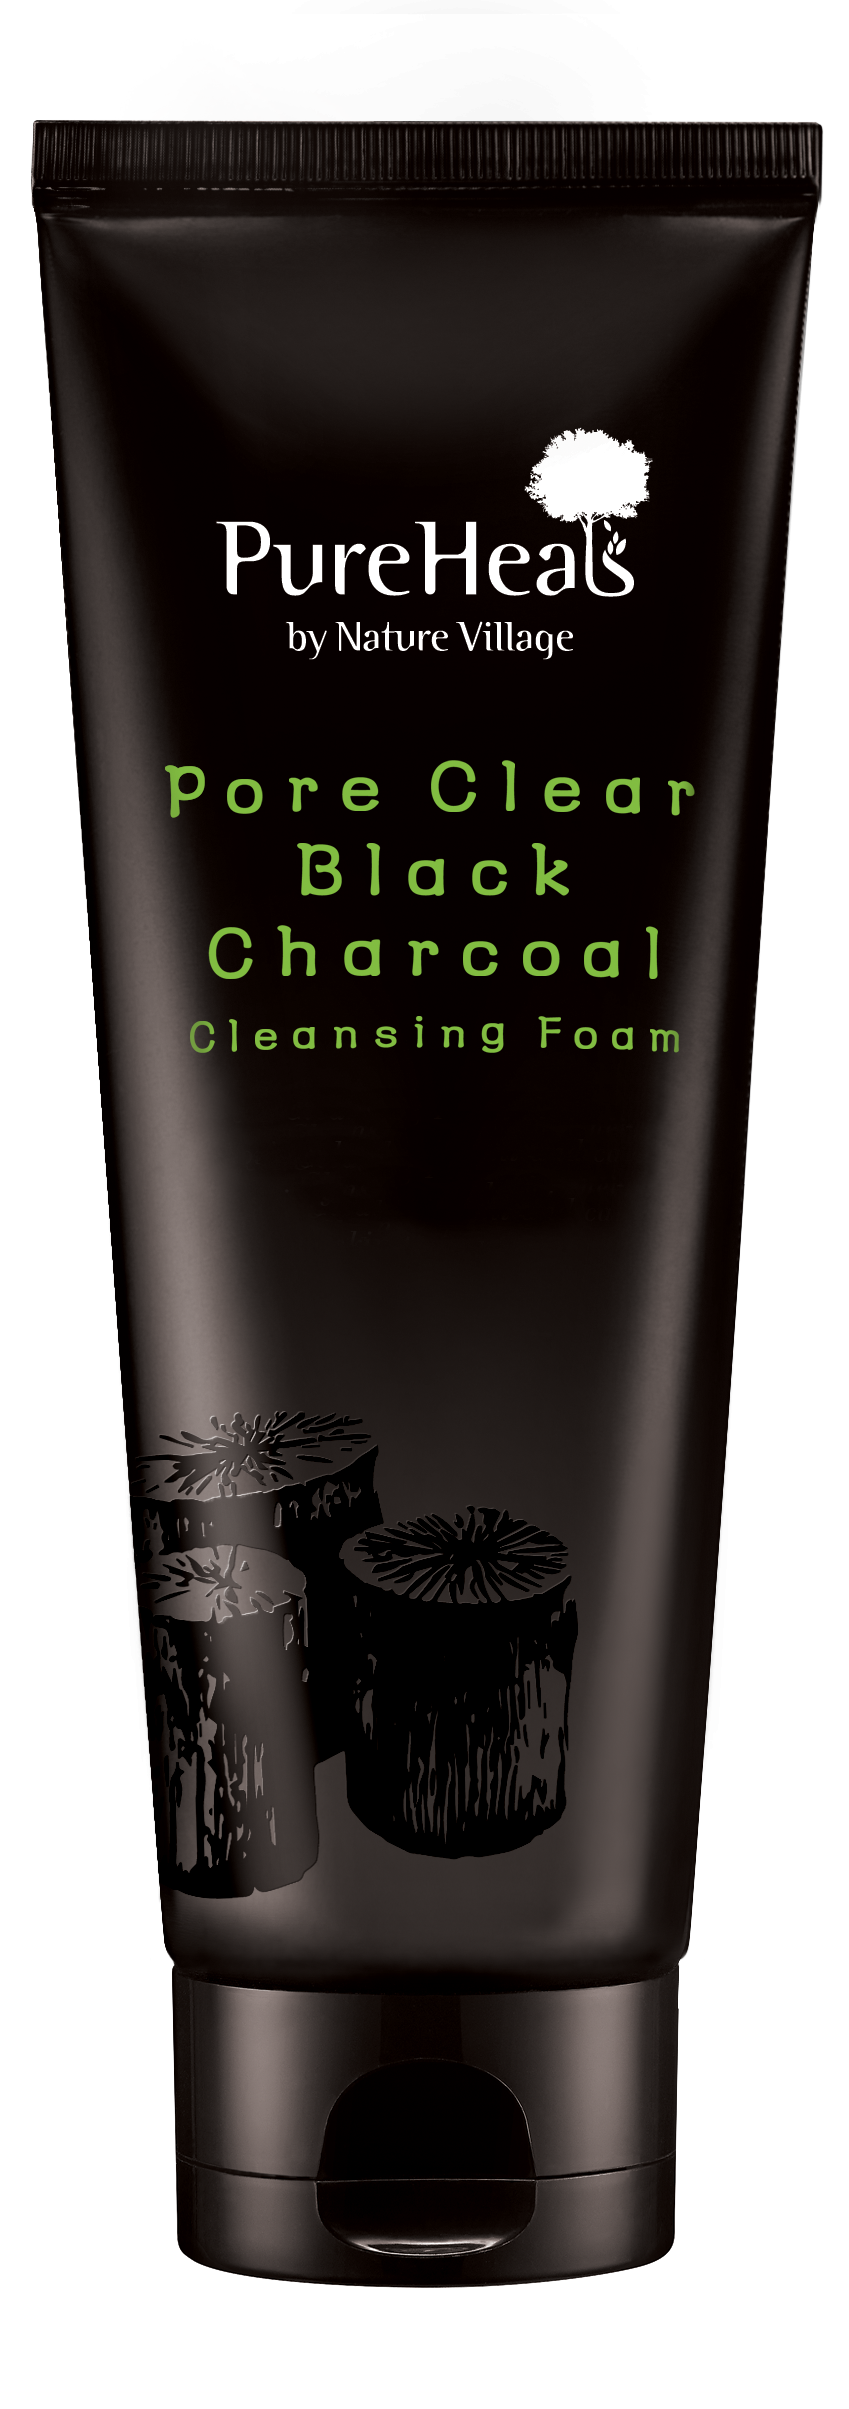 Charcoal Cleansing Foam. Черная пена. Dermal средство для умывания с древесным углем Black Charcoal. Clear Black пенка. Pore clear